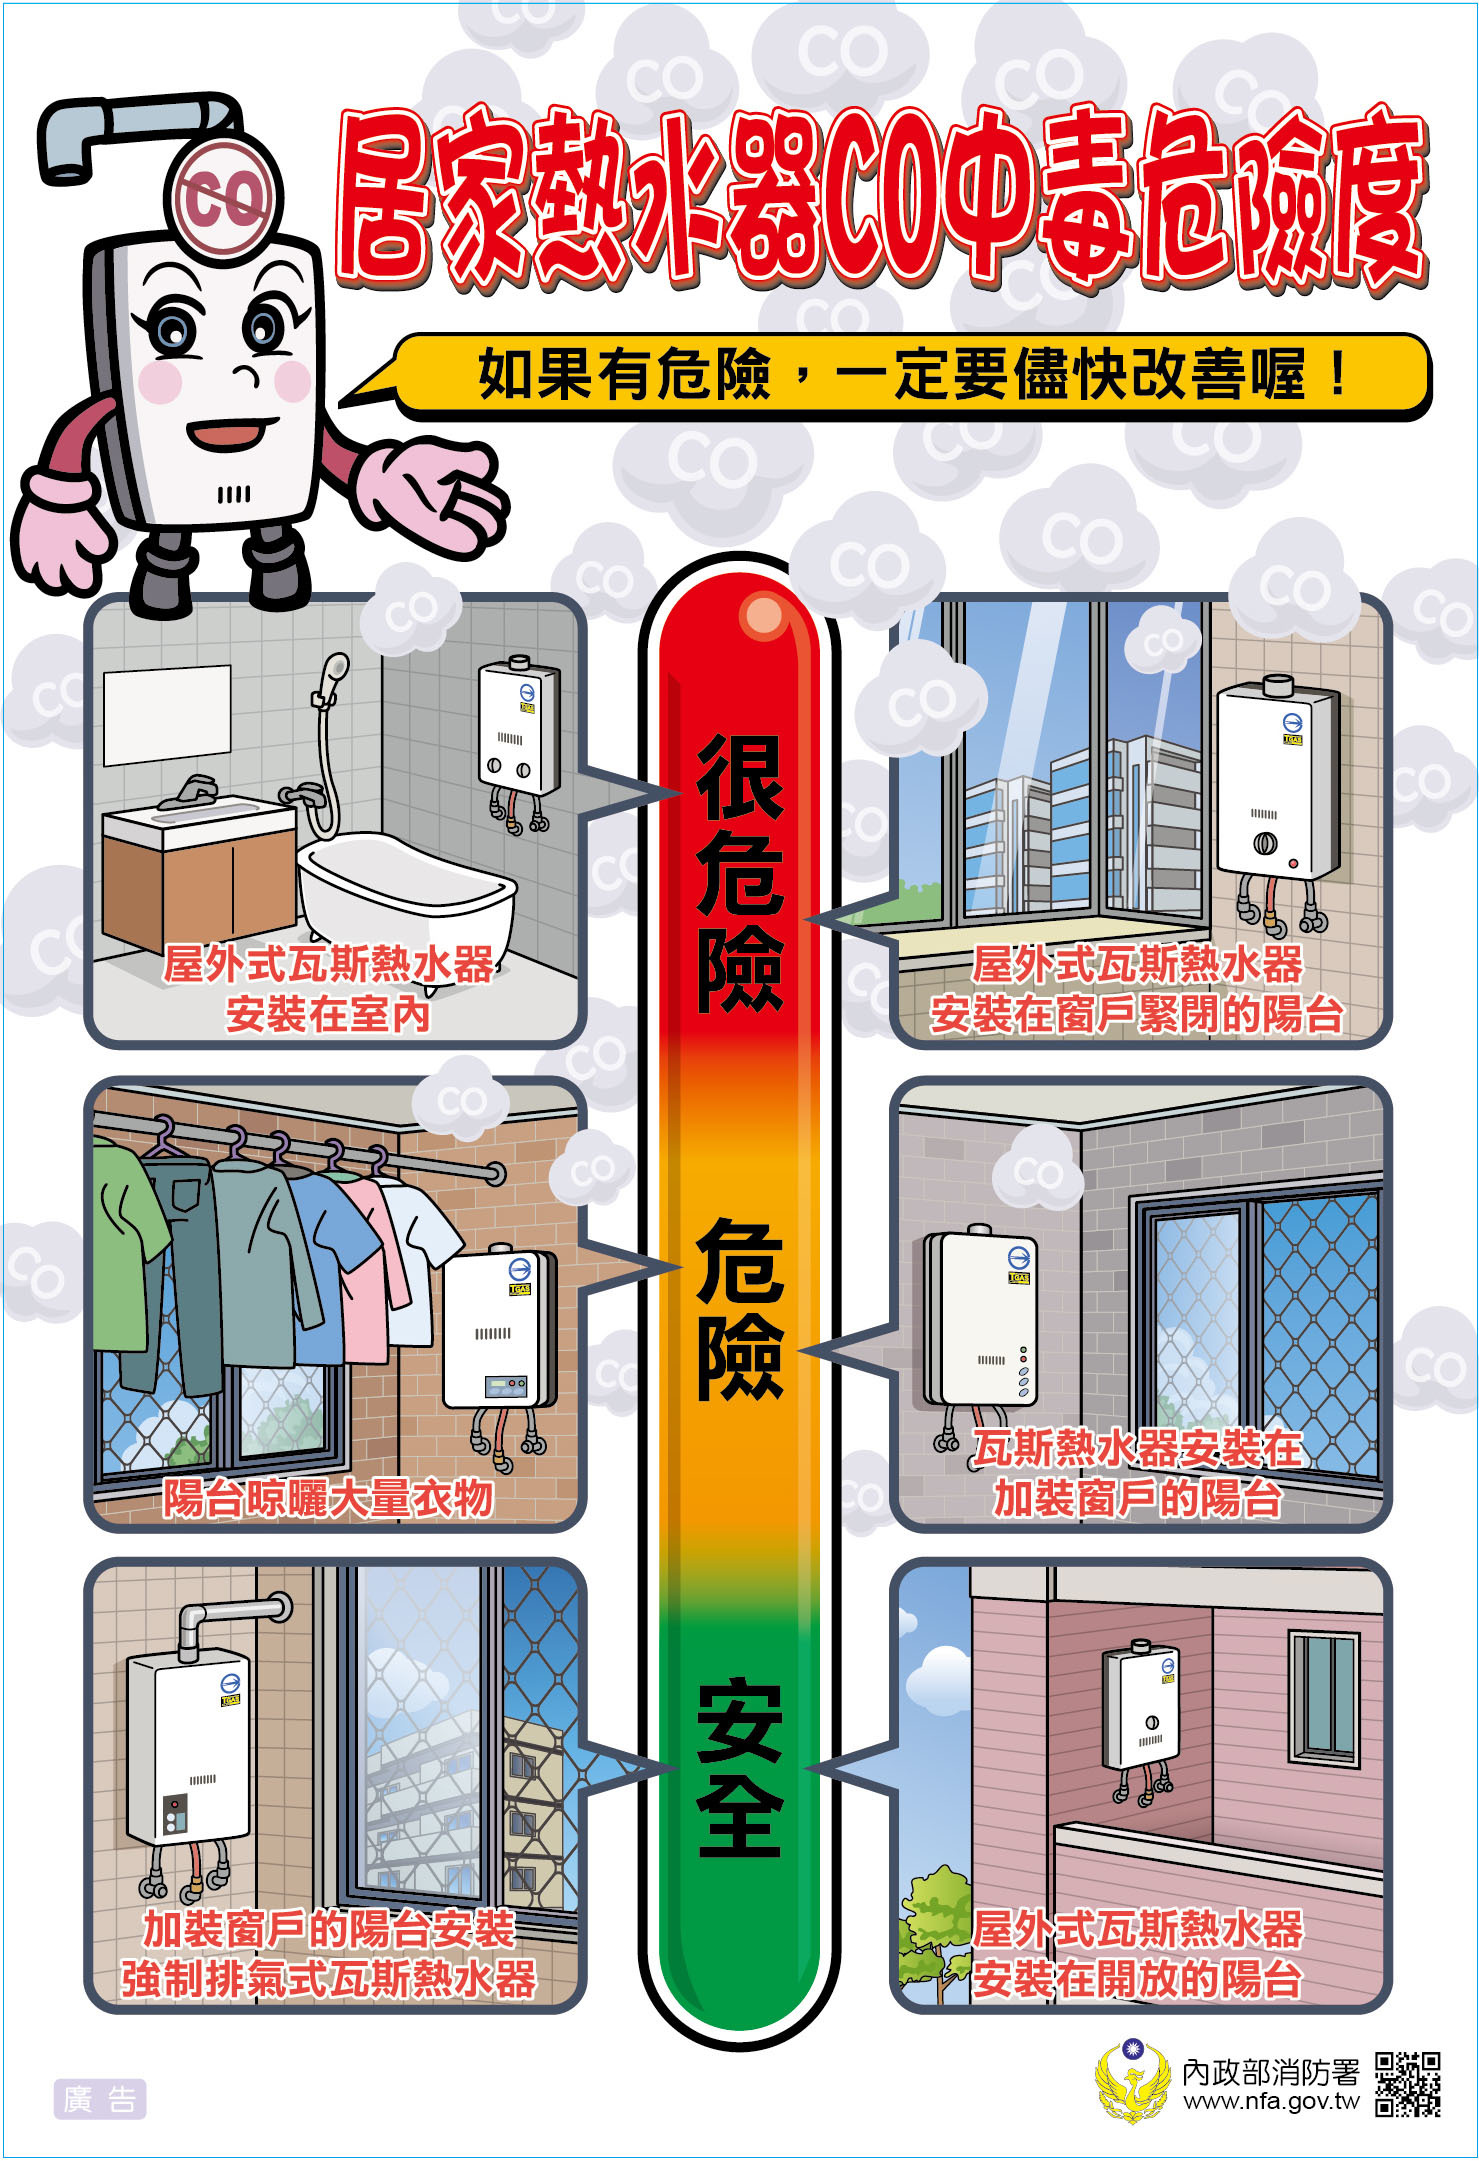 熱水器CO中毒危險度